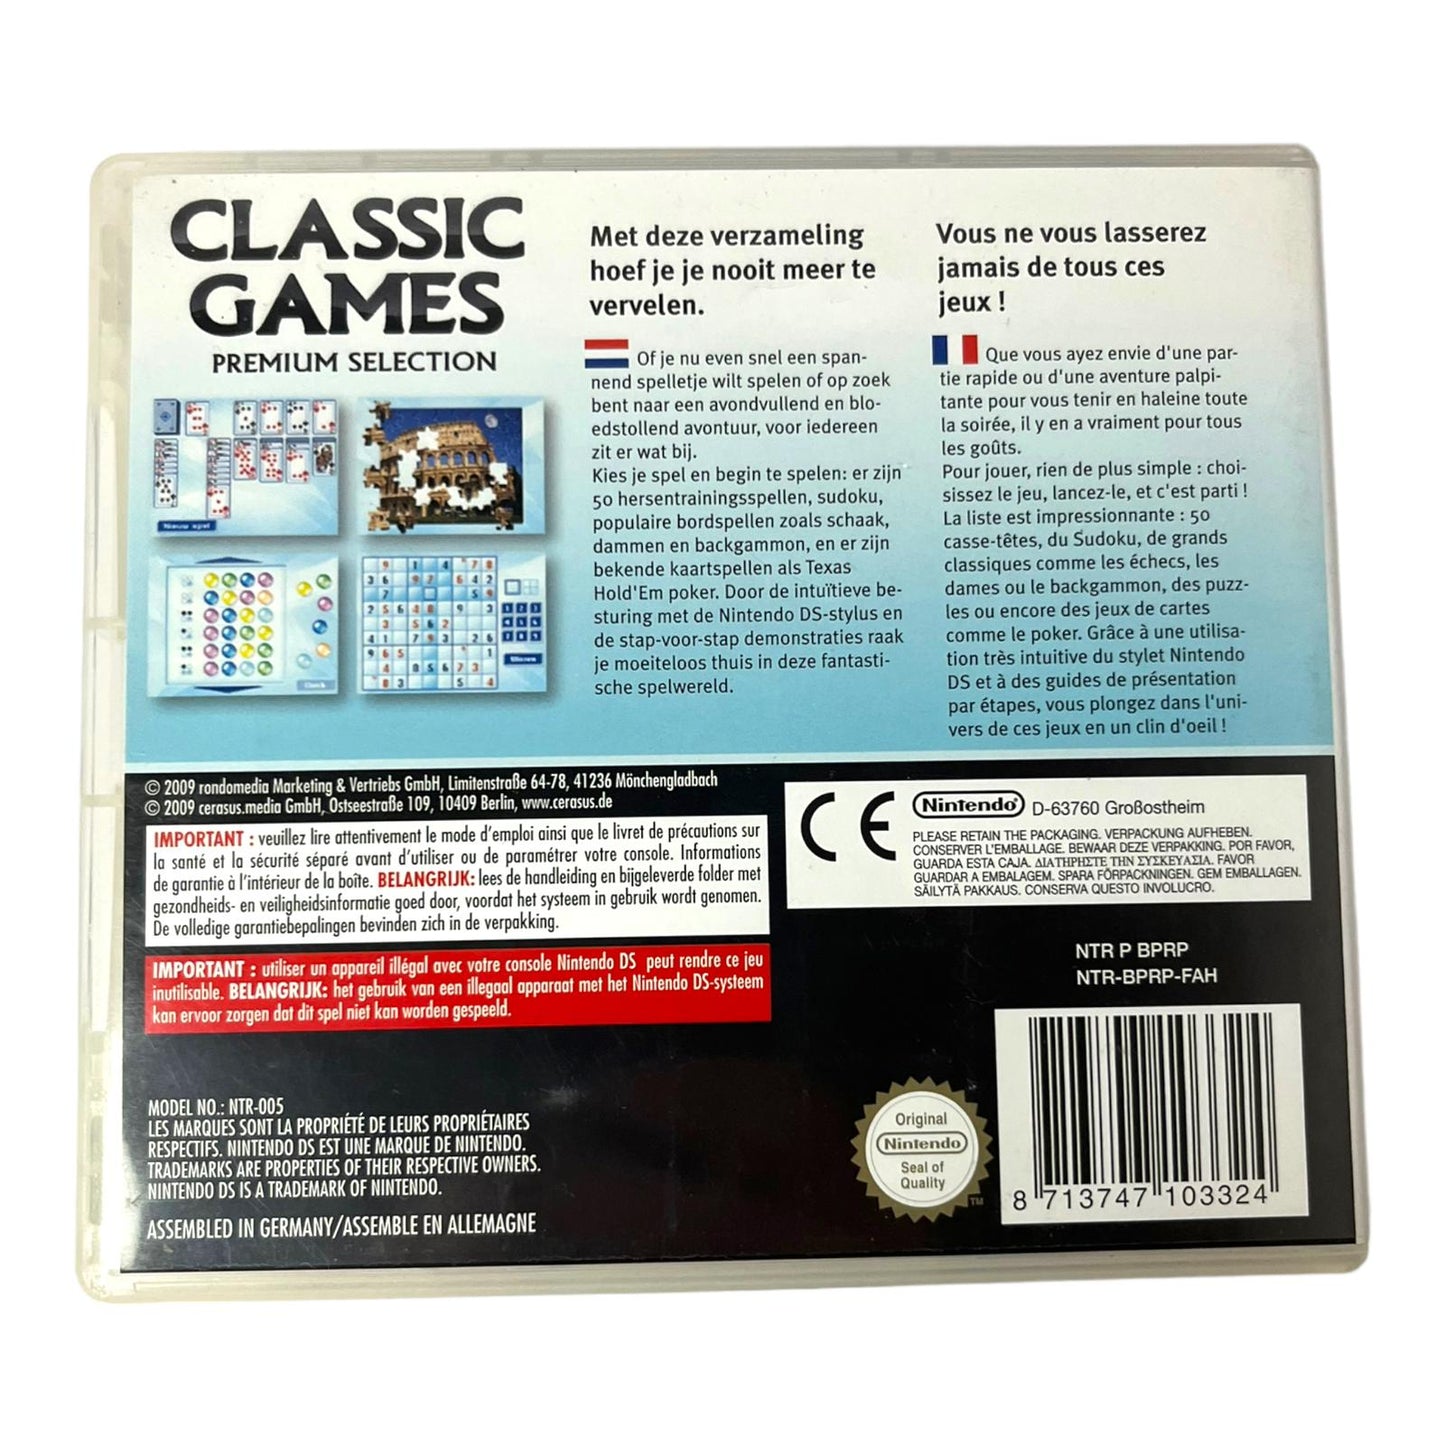 Classic Games: Premium Selection